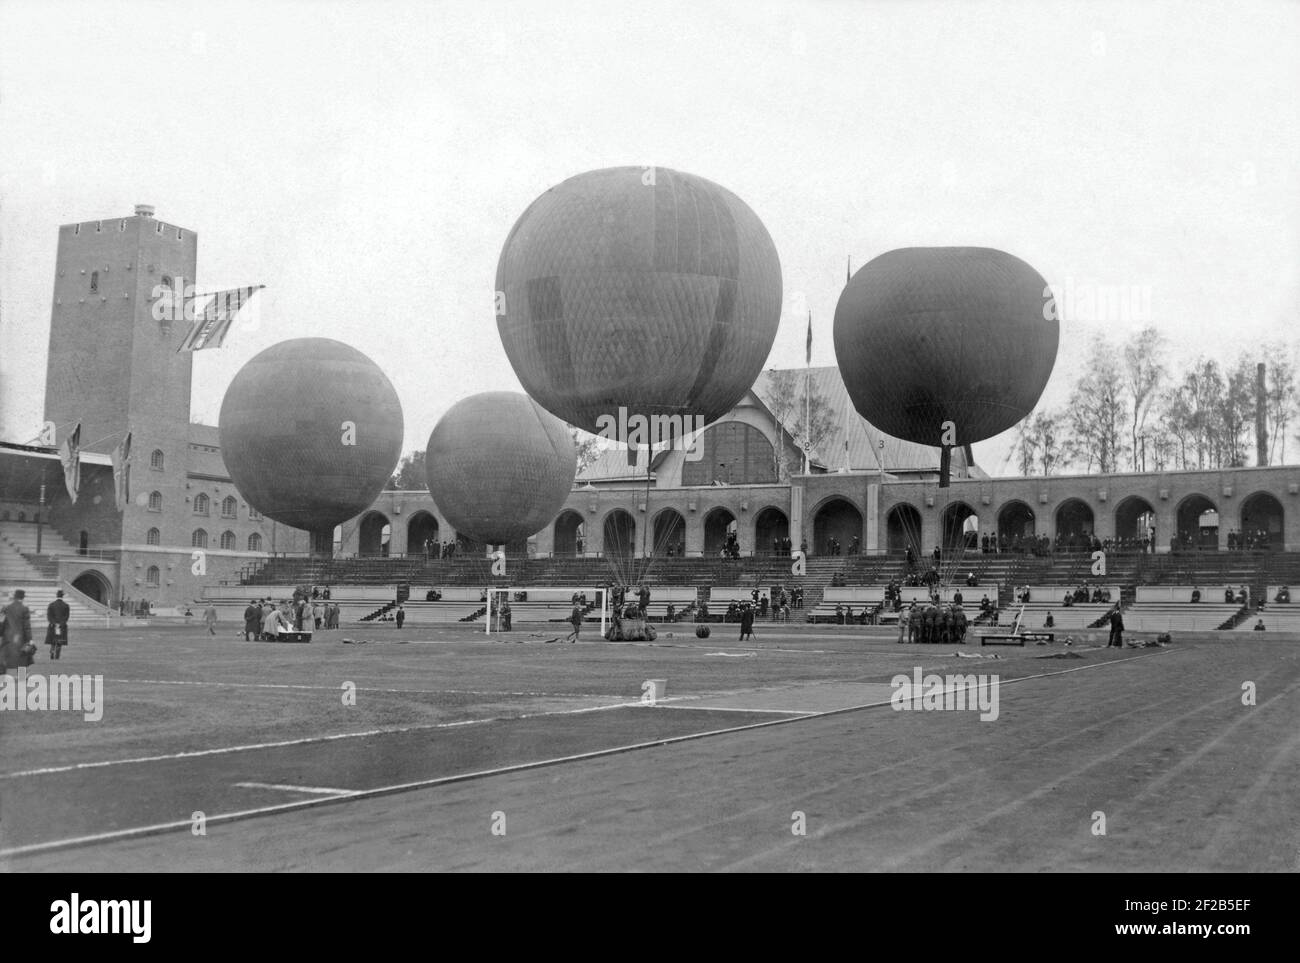 Ballons im Jahr 1912. Vier Teams bereiten am 11 1912. oktober mit ihren Heißluftballons aus dem Stockholms Stadion den Start vor. Die Veranstaltung ist Teil der jährlichen Avitation Week in Stockholm, die auch Flugzeugshows beinhaltete. Stockfoto